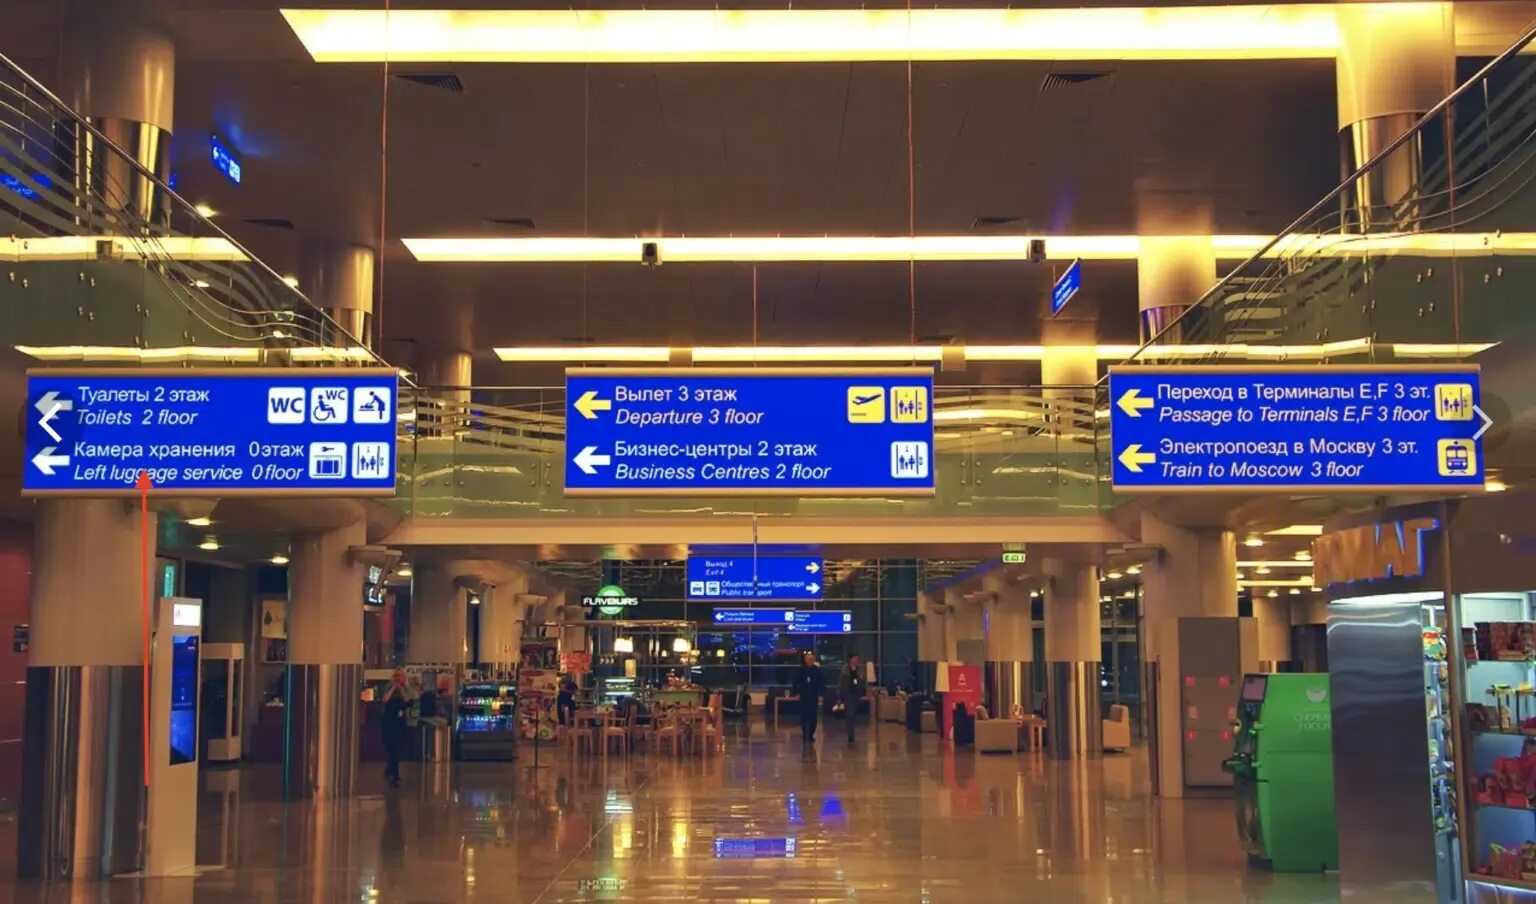 Шереметьево терминал египет. Шереметьево терминал д. Терминал д Шереметьево планировка. Шереметьево столб 101 терминал b. Аэропорт Шереметьево терминал в.